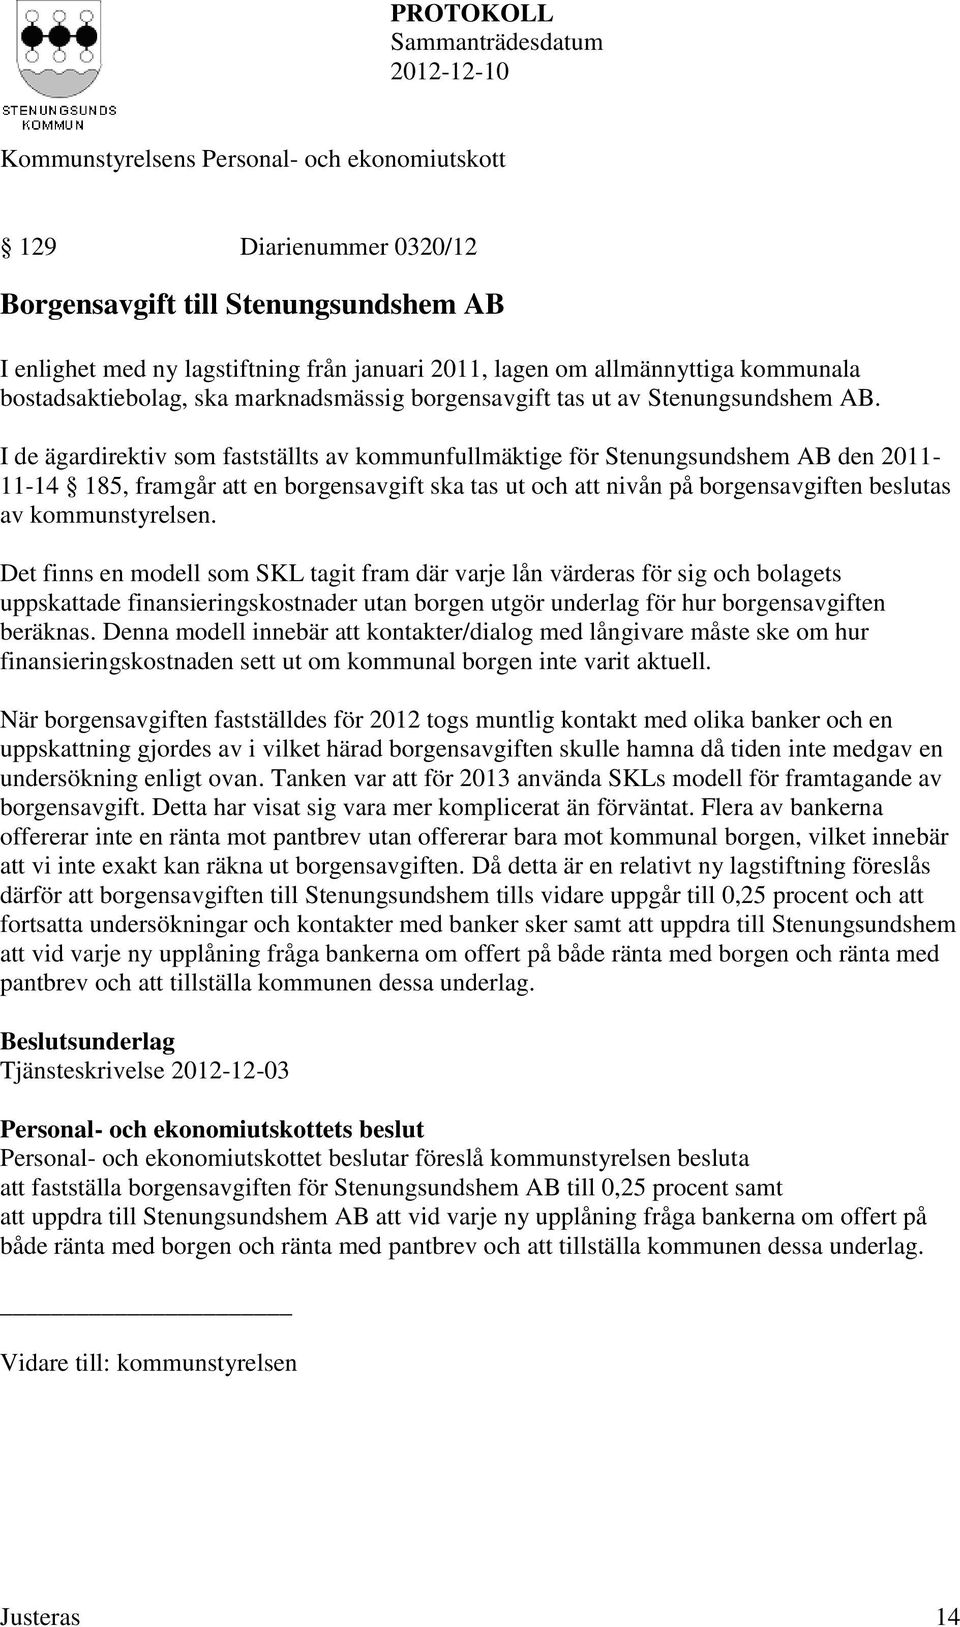 I de ägardirektiv som fastställts av kommunfullmäktige för Stenungsundshem AB den 2011-11-14 185, framgår att en borgensavgift ska tas ut och att nivån på borgensavgiften beslutas av kommunstyrelsen.